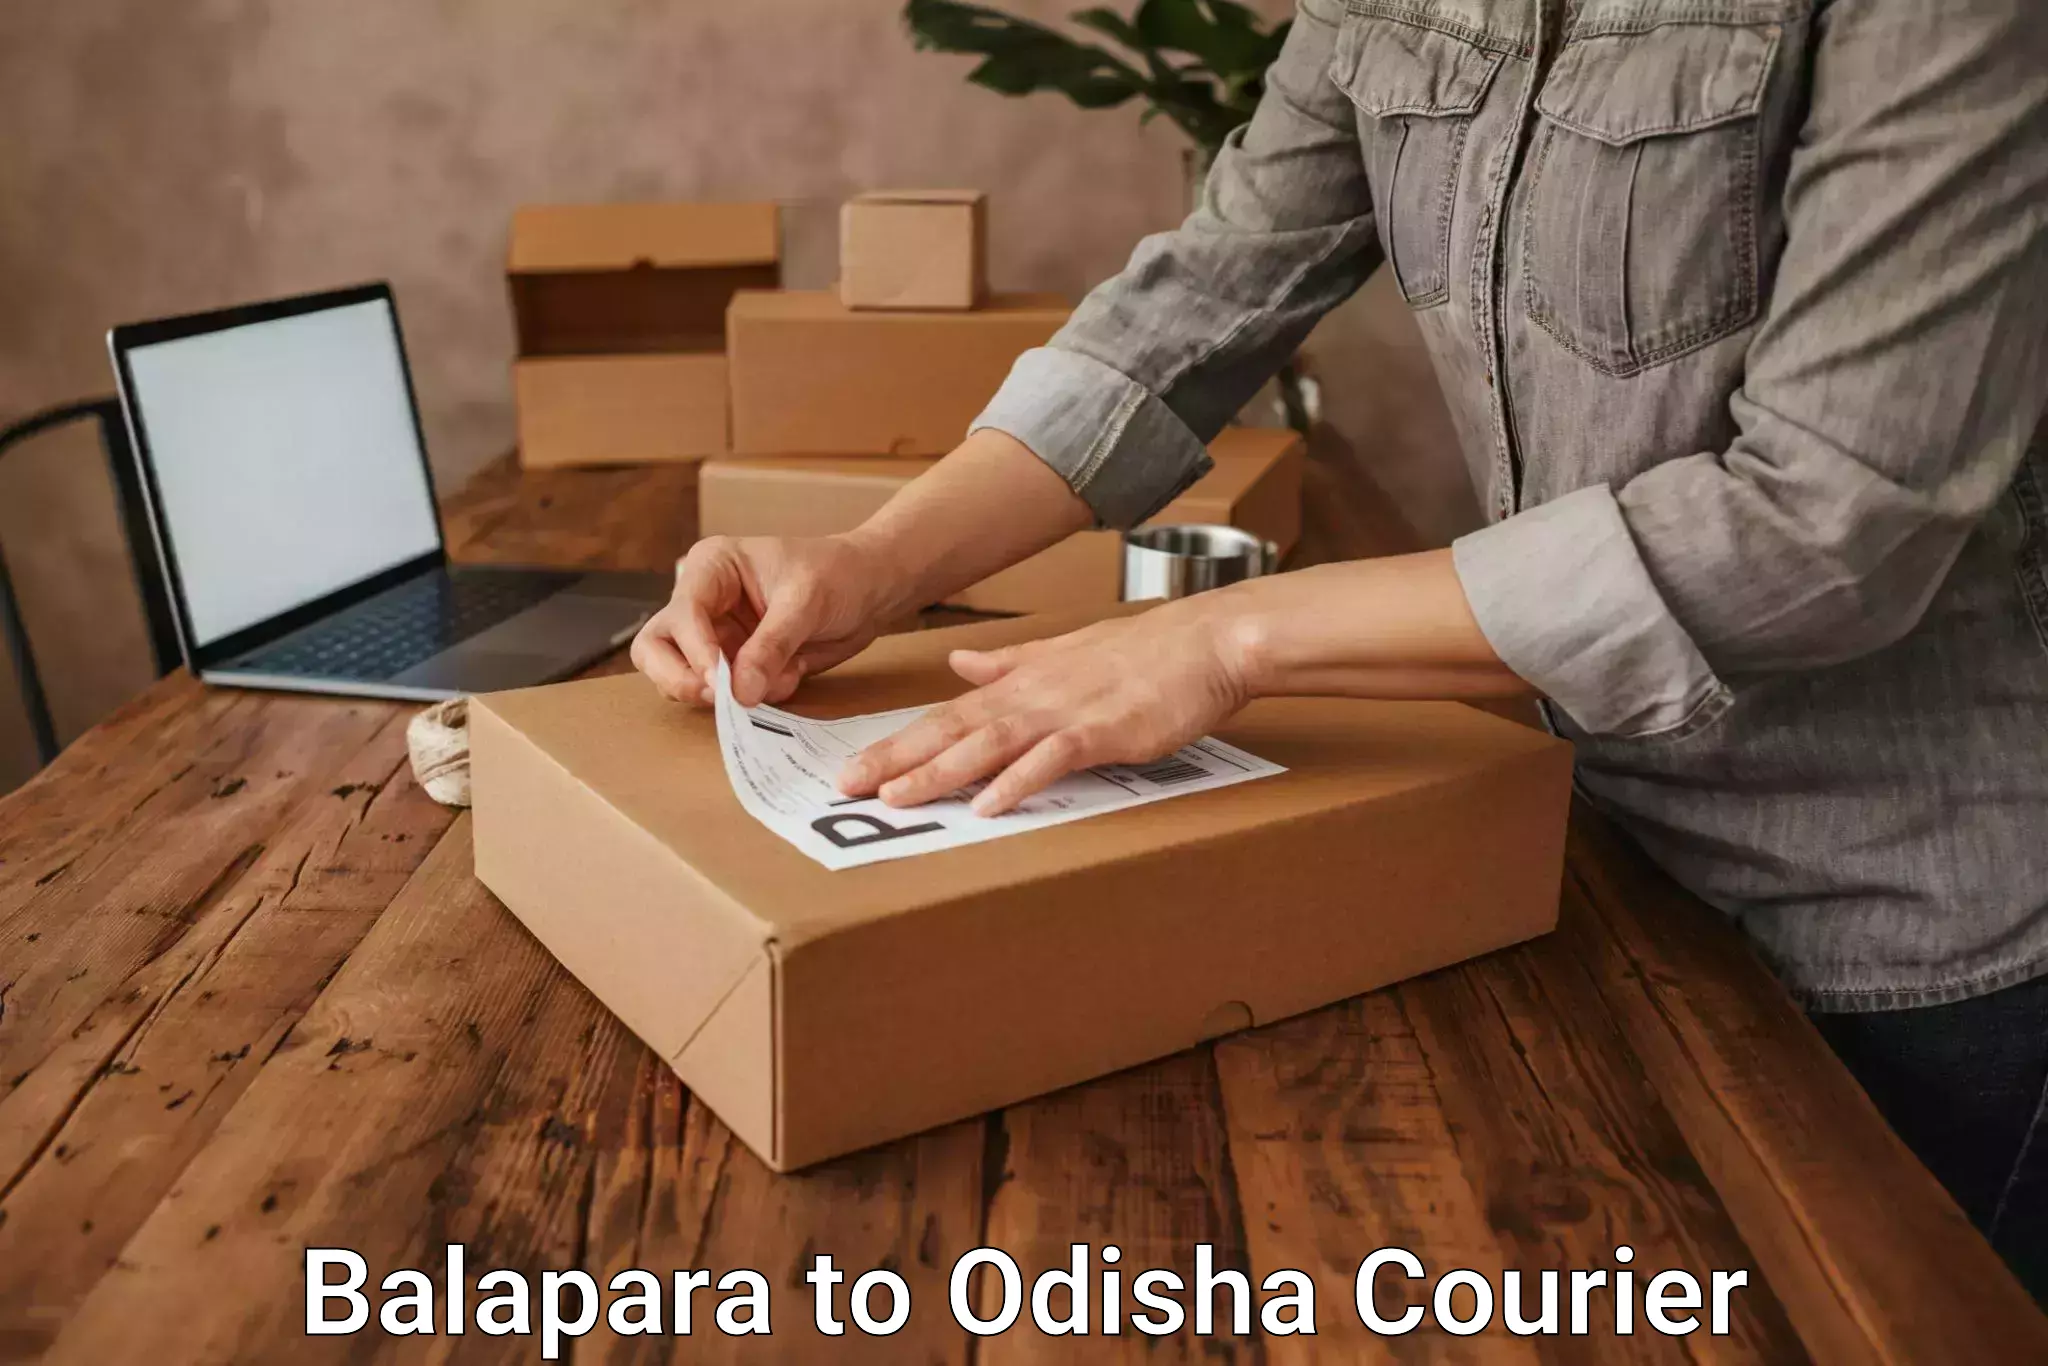 Modern courier technology Balapara to Raikia